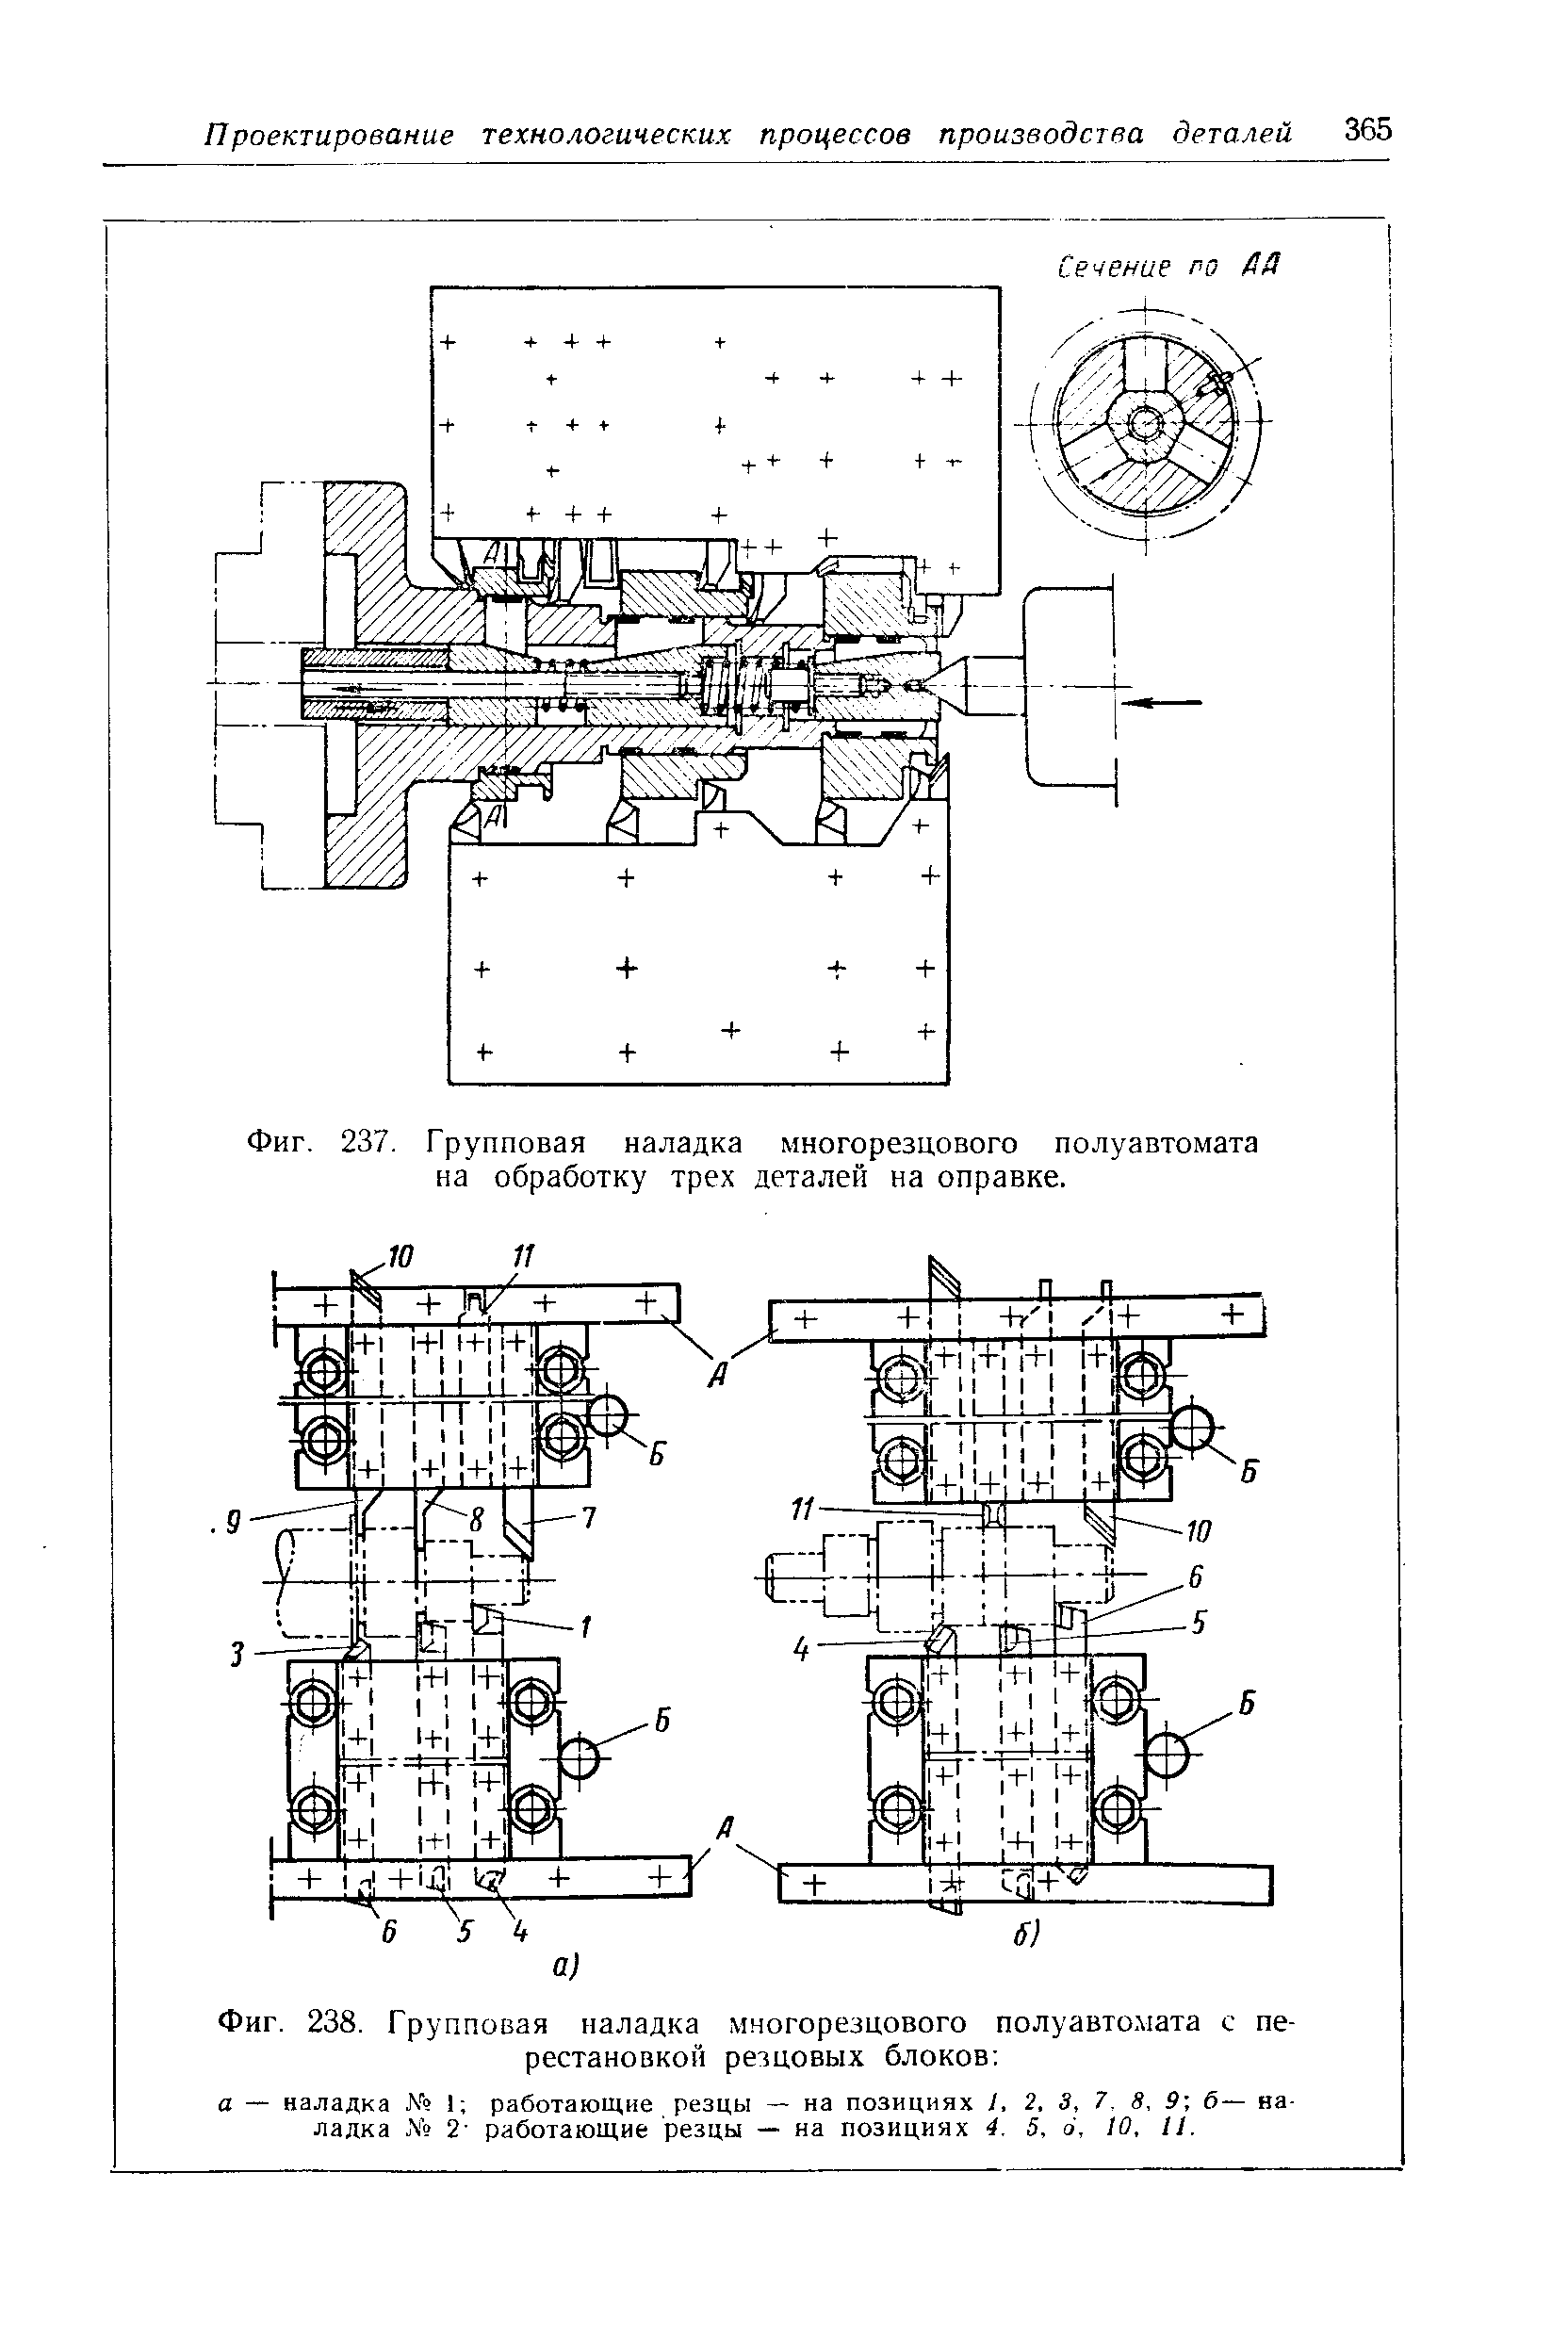 Фиг. 238. Групповая наладка многорезцового полуавтомата с перестановкой резцовых блоков 
